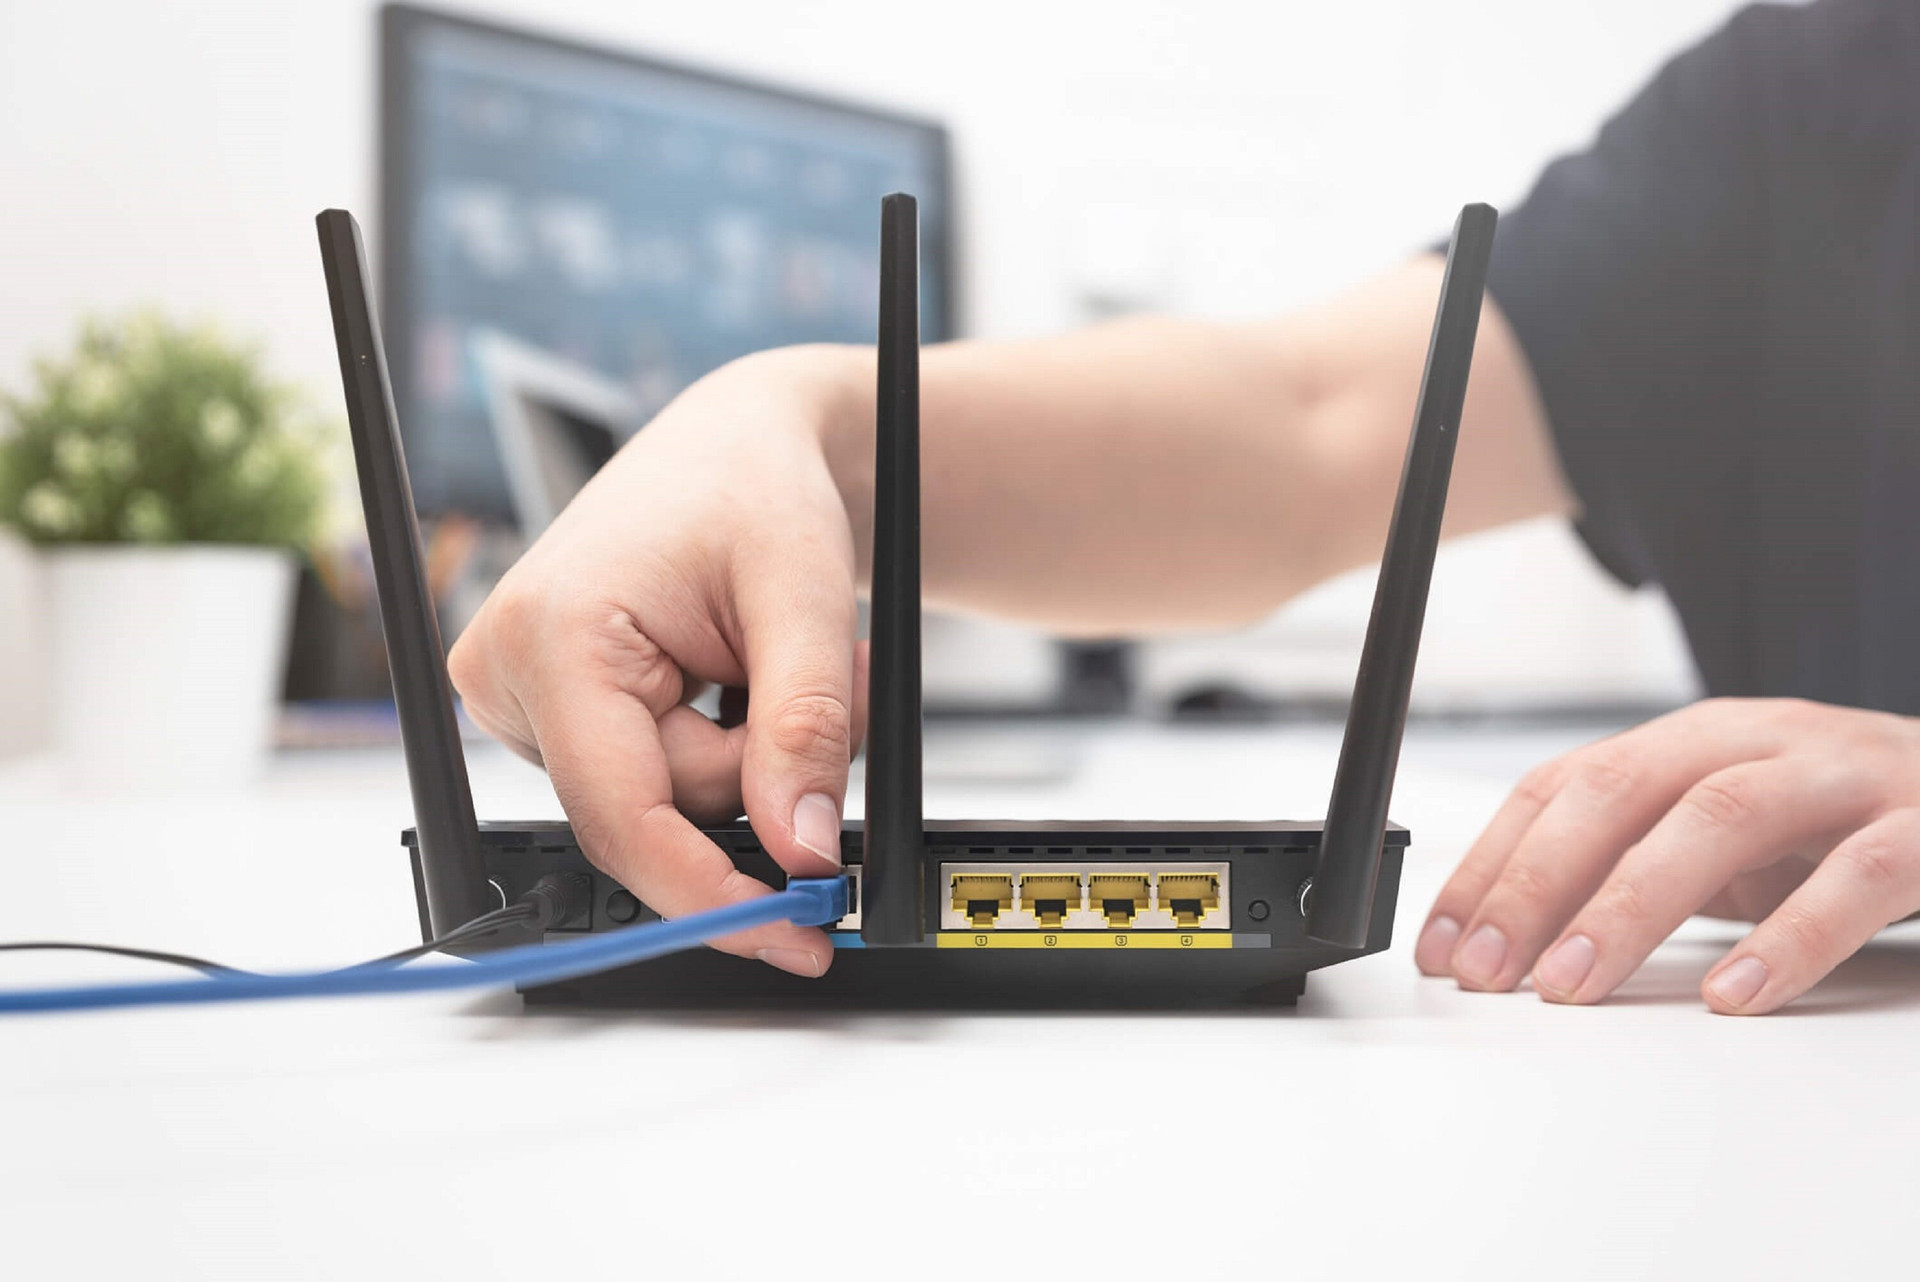 Hãy đảm bảo router luôn được kết nối nguồn điện khi bạn vắng nhà. (Ảnh: Getty Images)